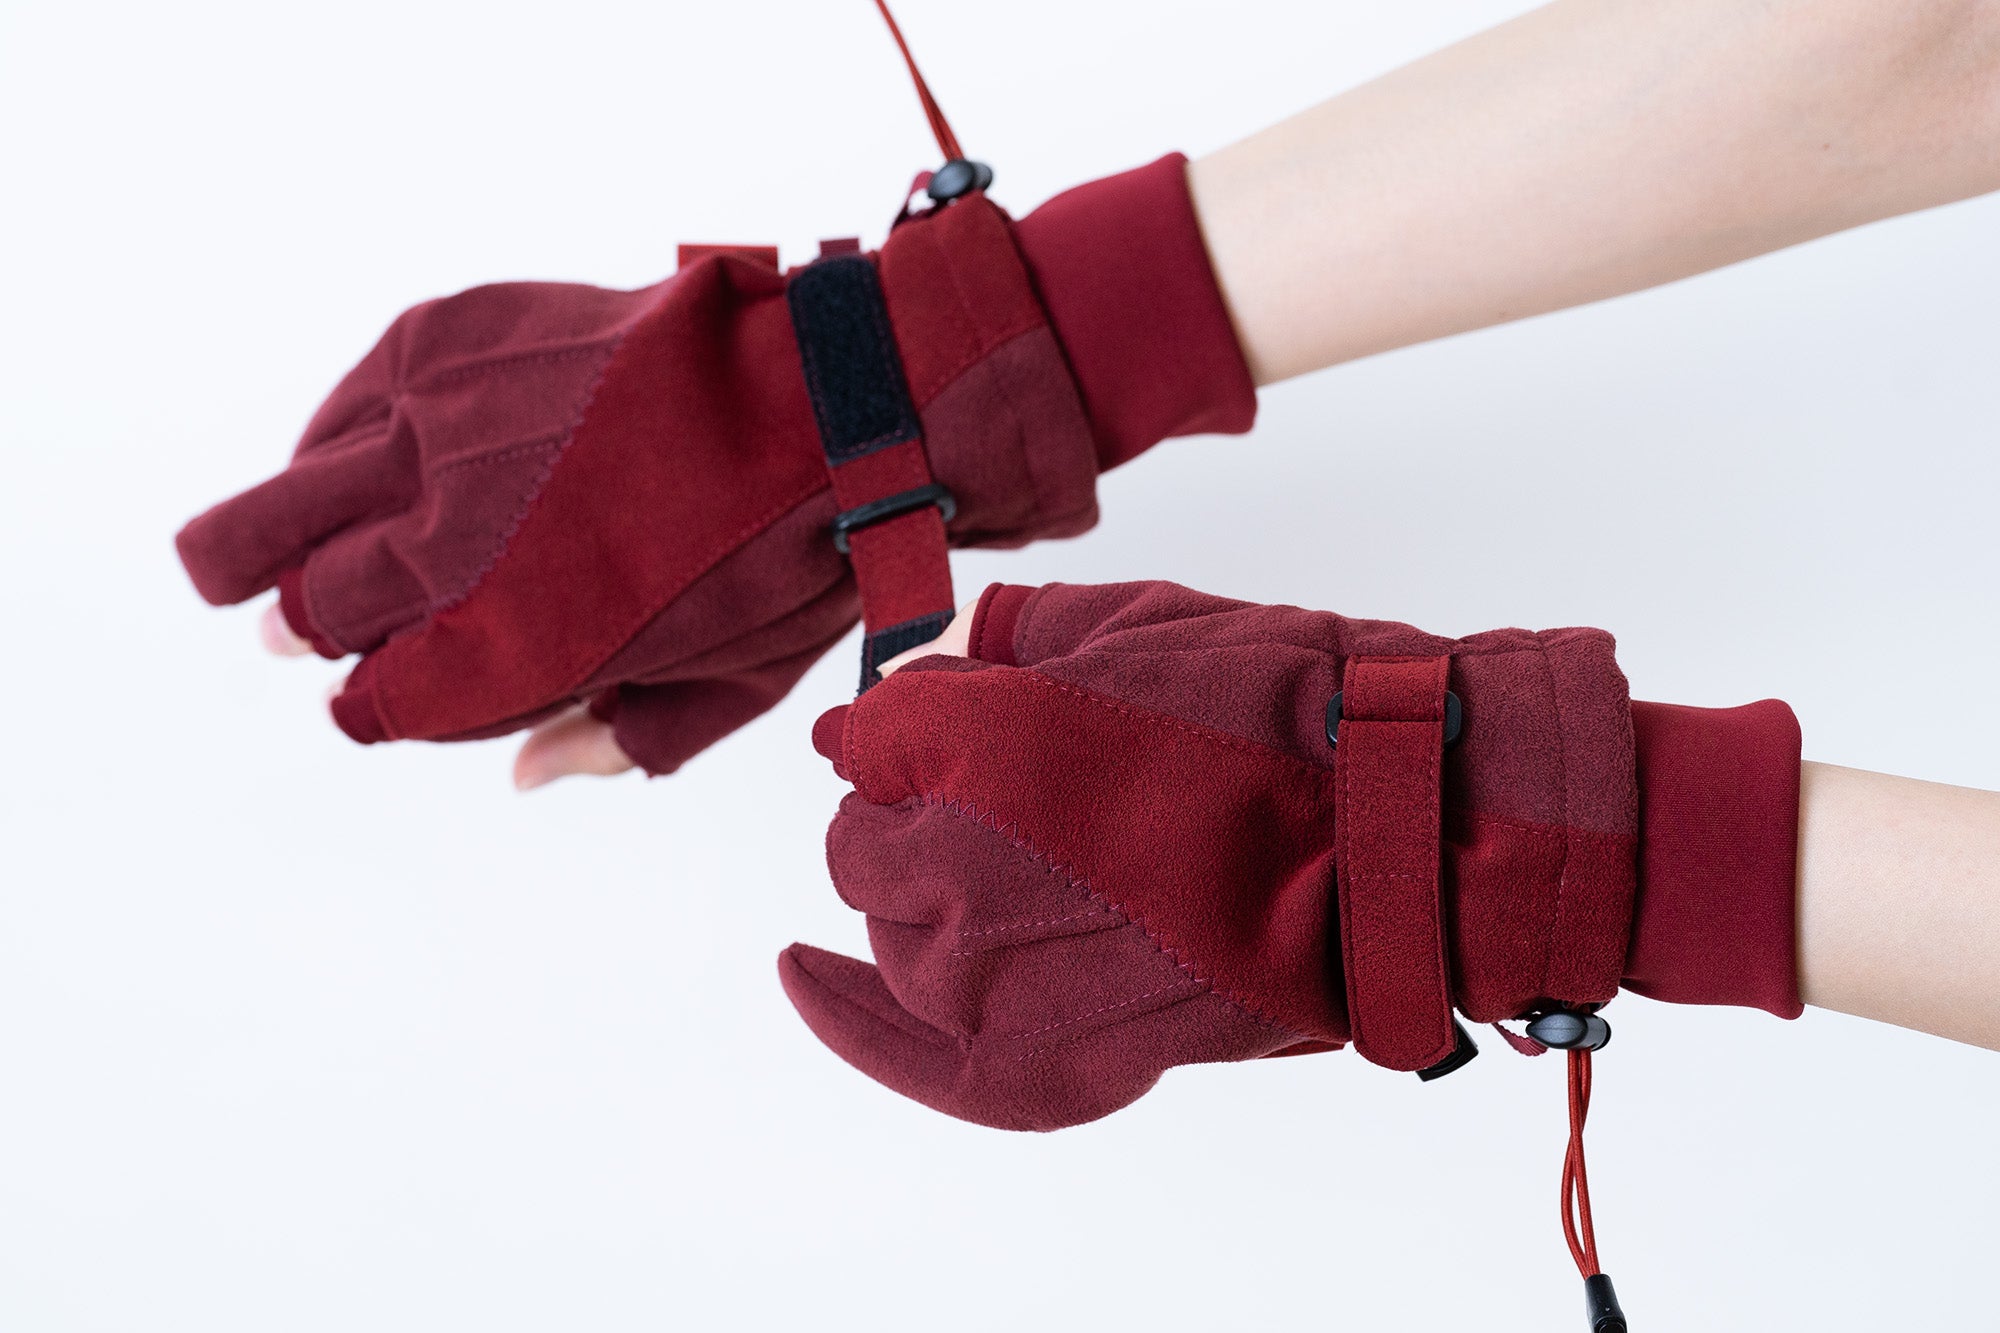 Study Gloves / KILL la KILL RED